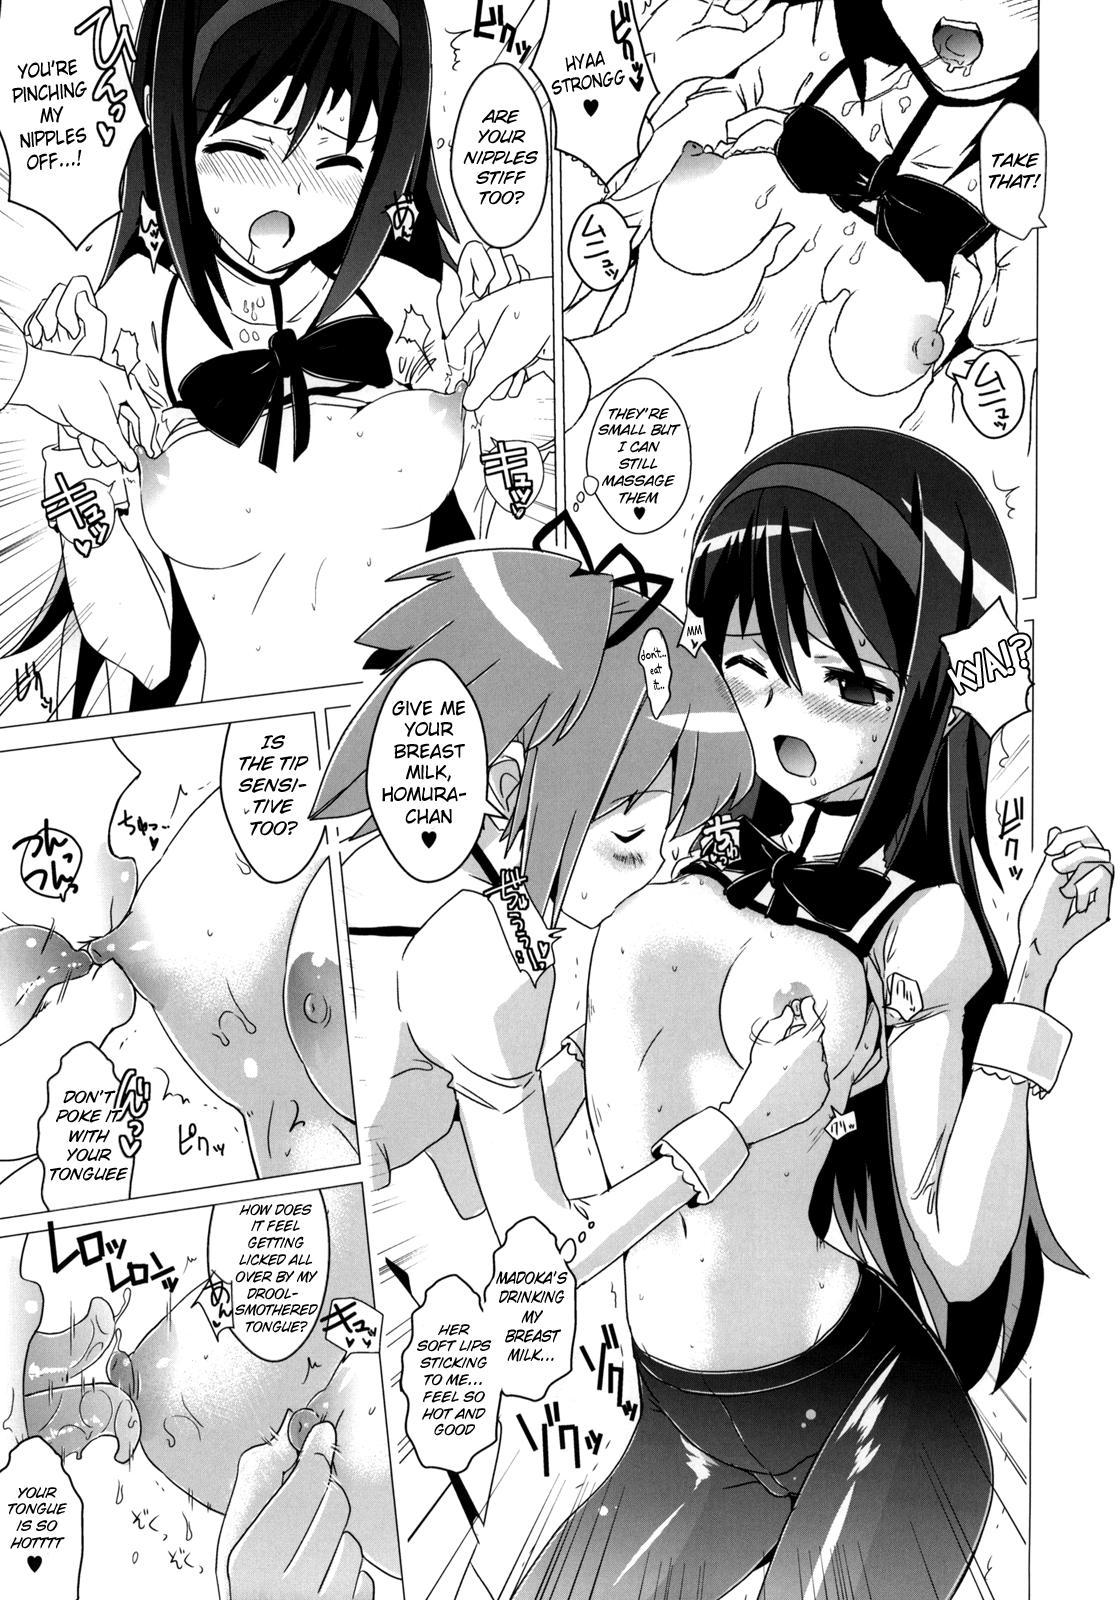 Fucking Sex Hentai Musume + Omake Paper - Puella magi madoka magica Passivo - Page 4